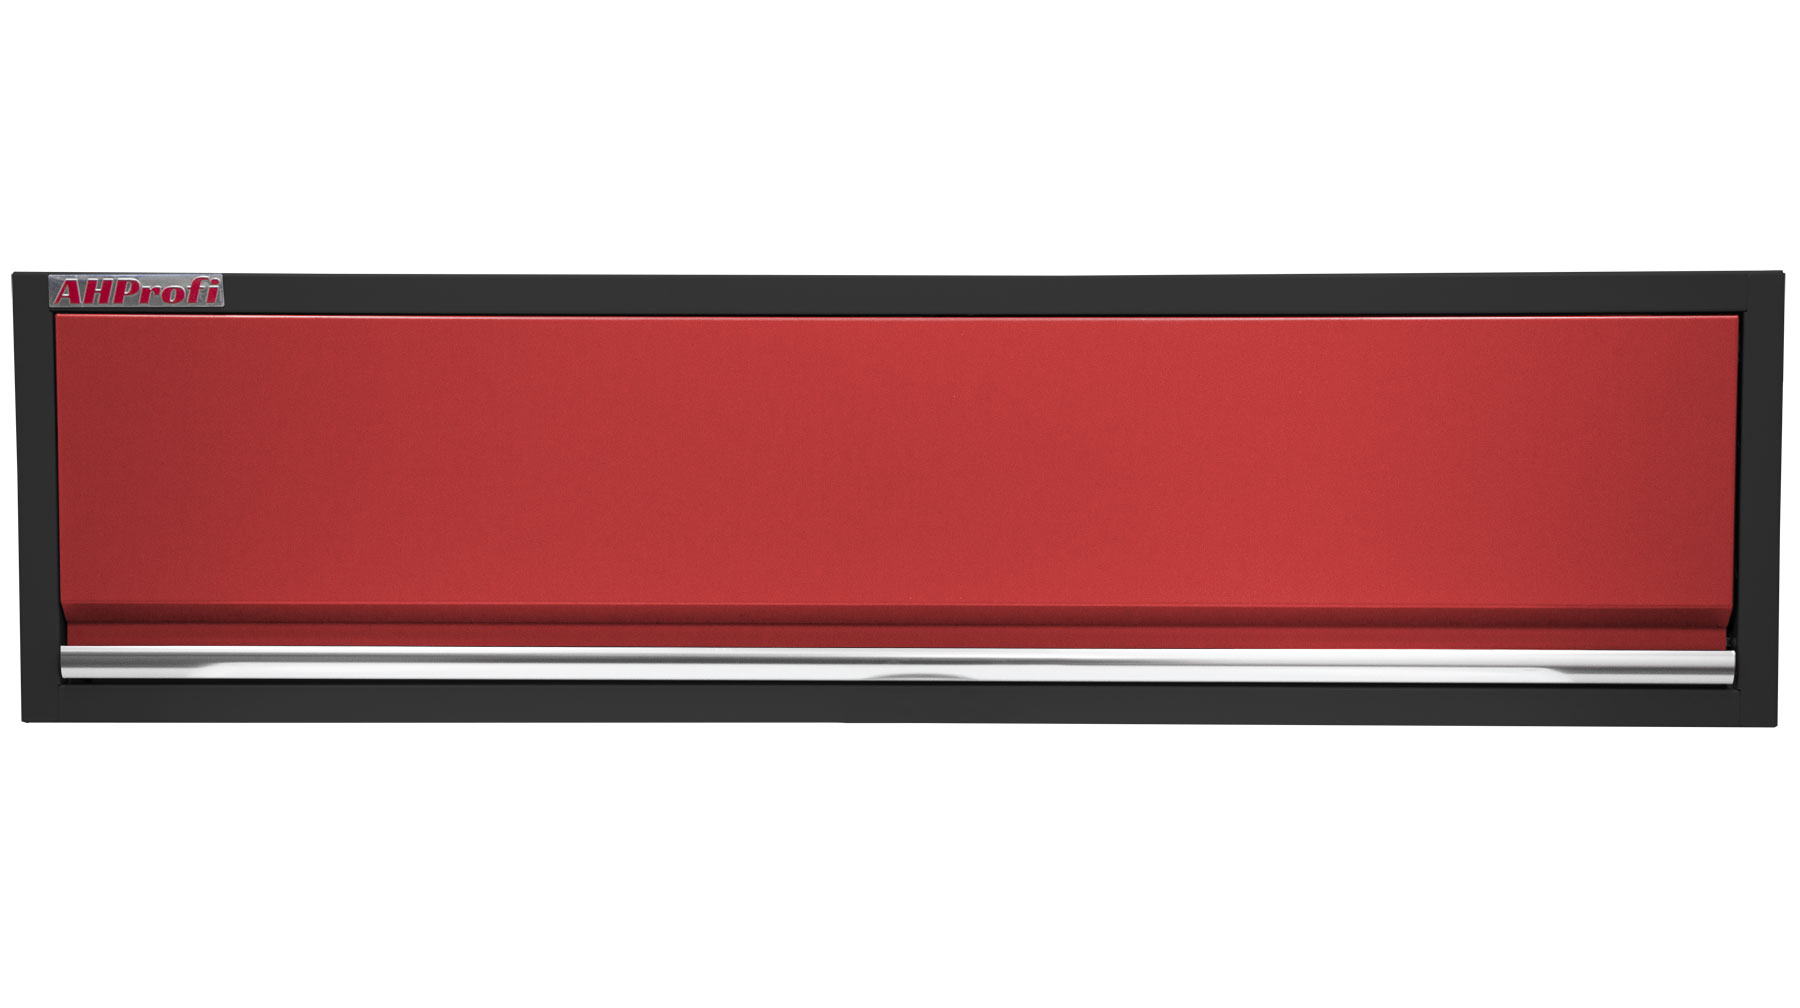 Celokovová závěsná skříňka PROFI RED s výklopnými dvířky 1360x281x350 mm - RWGB1326W